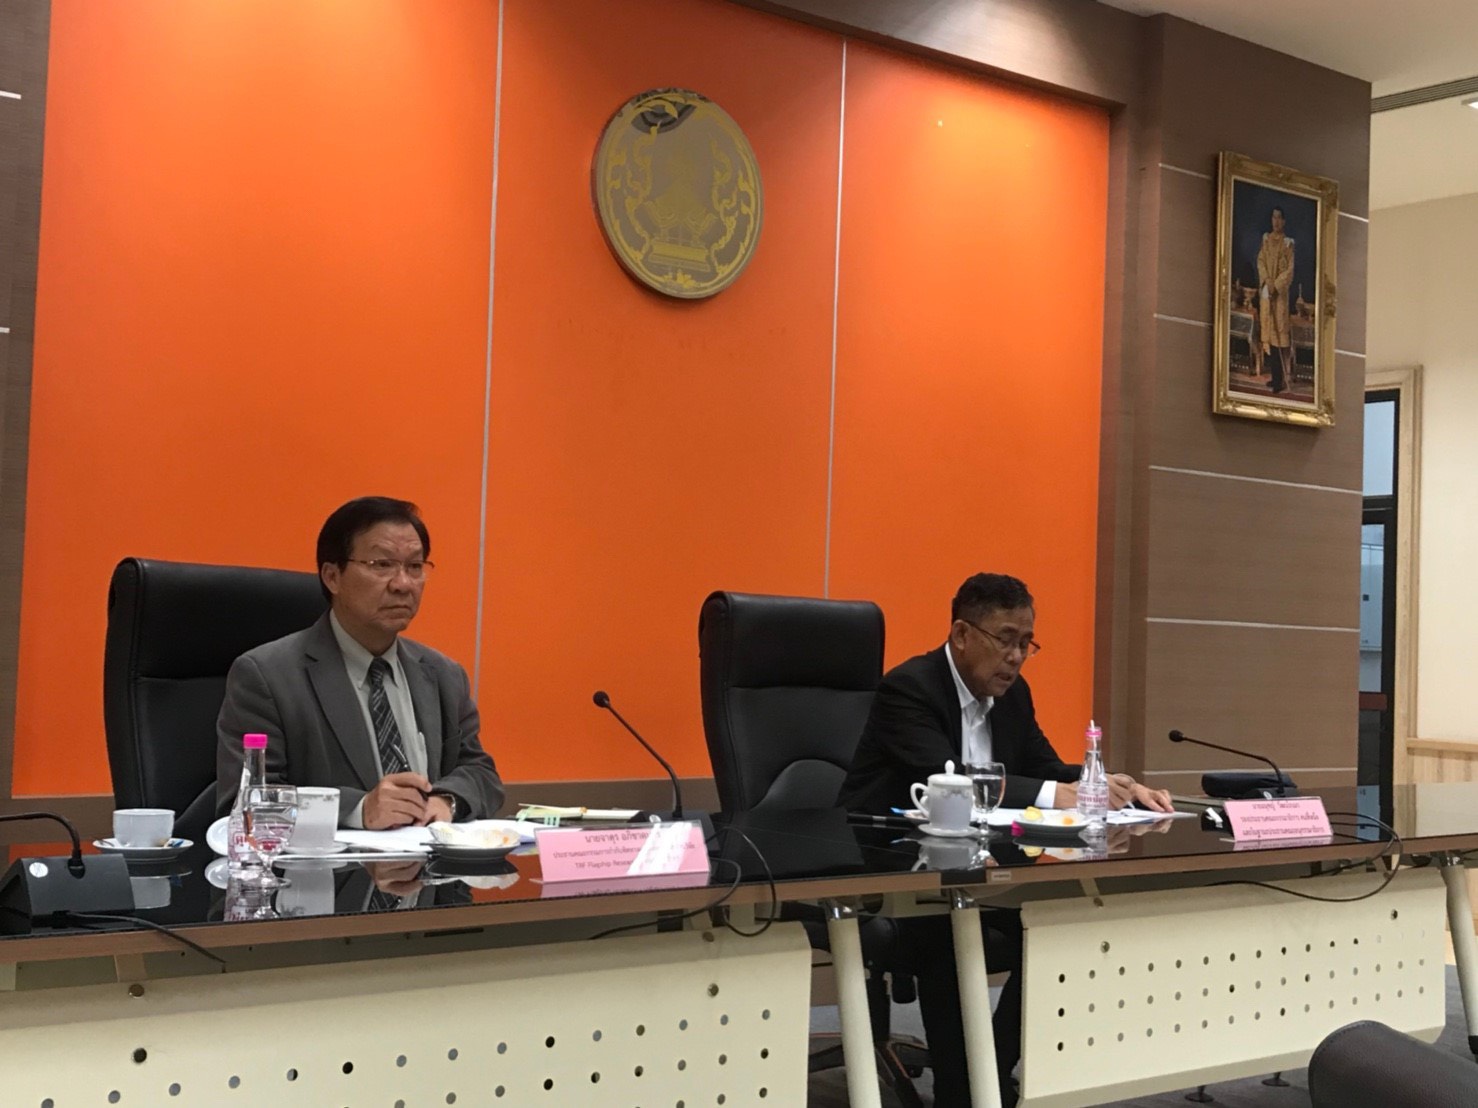  11 February 2019, at Udon Thani City Hall